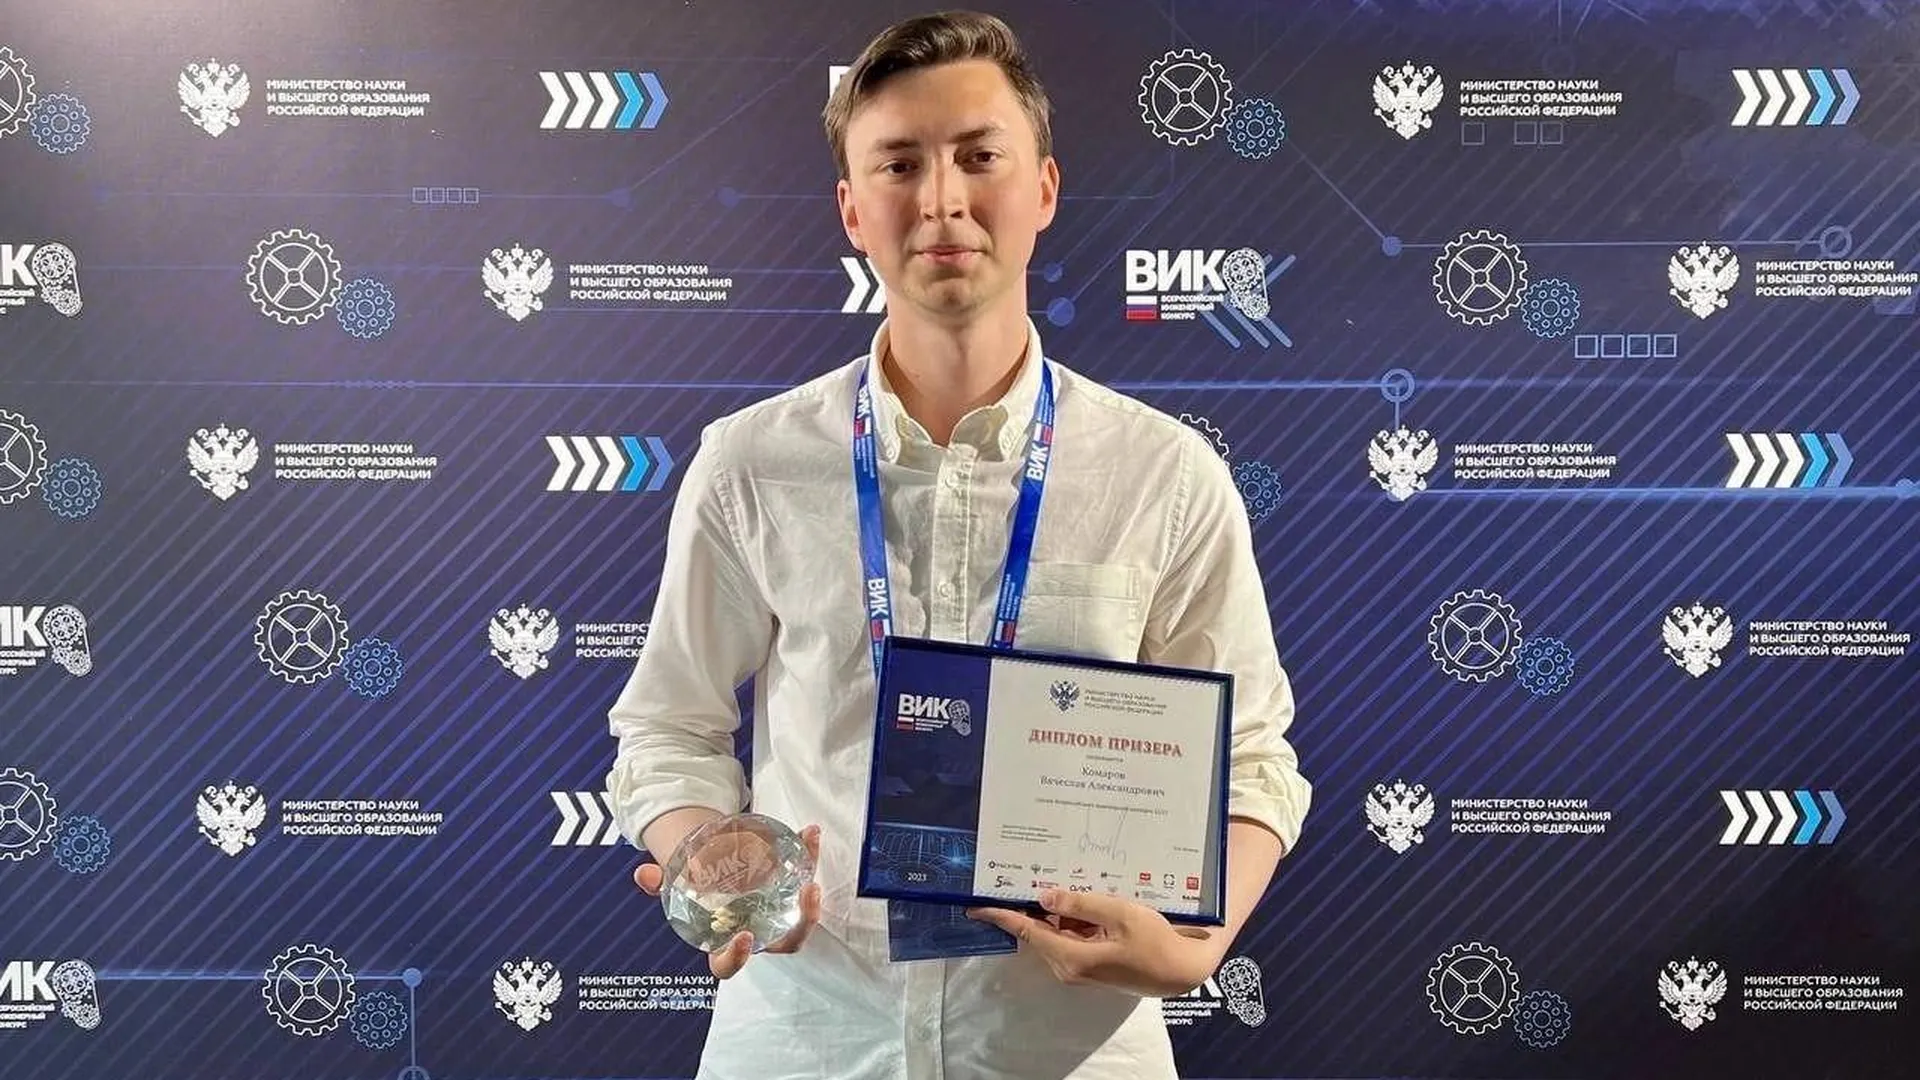 Студент из Дубны вышел в призеры Всероссийского инженерного конкурса